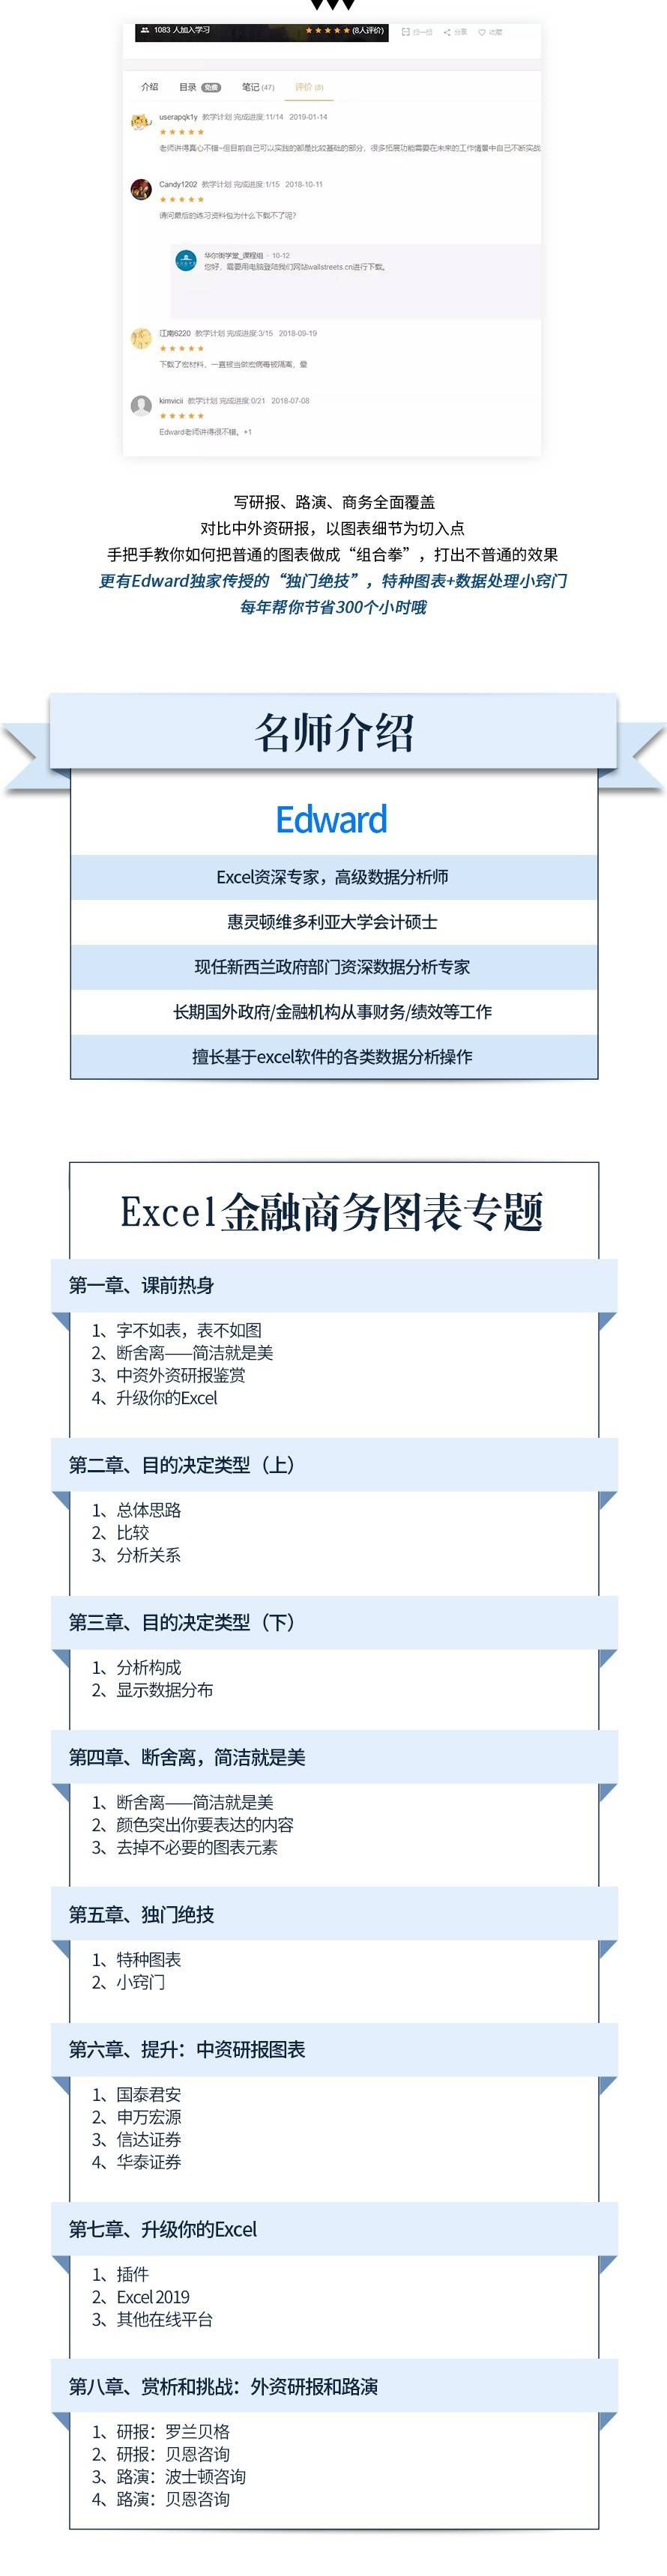 【华尔街学堂】Excel金融商务图表专题【完结】